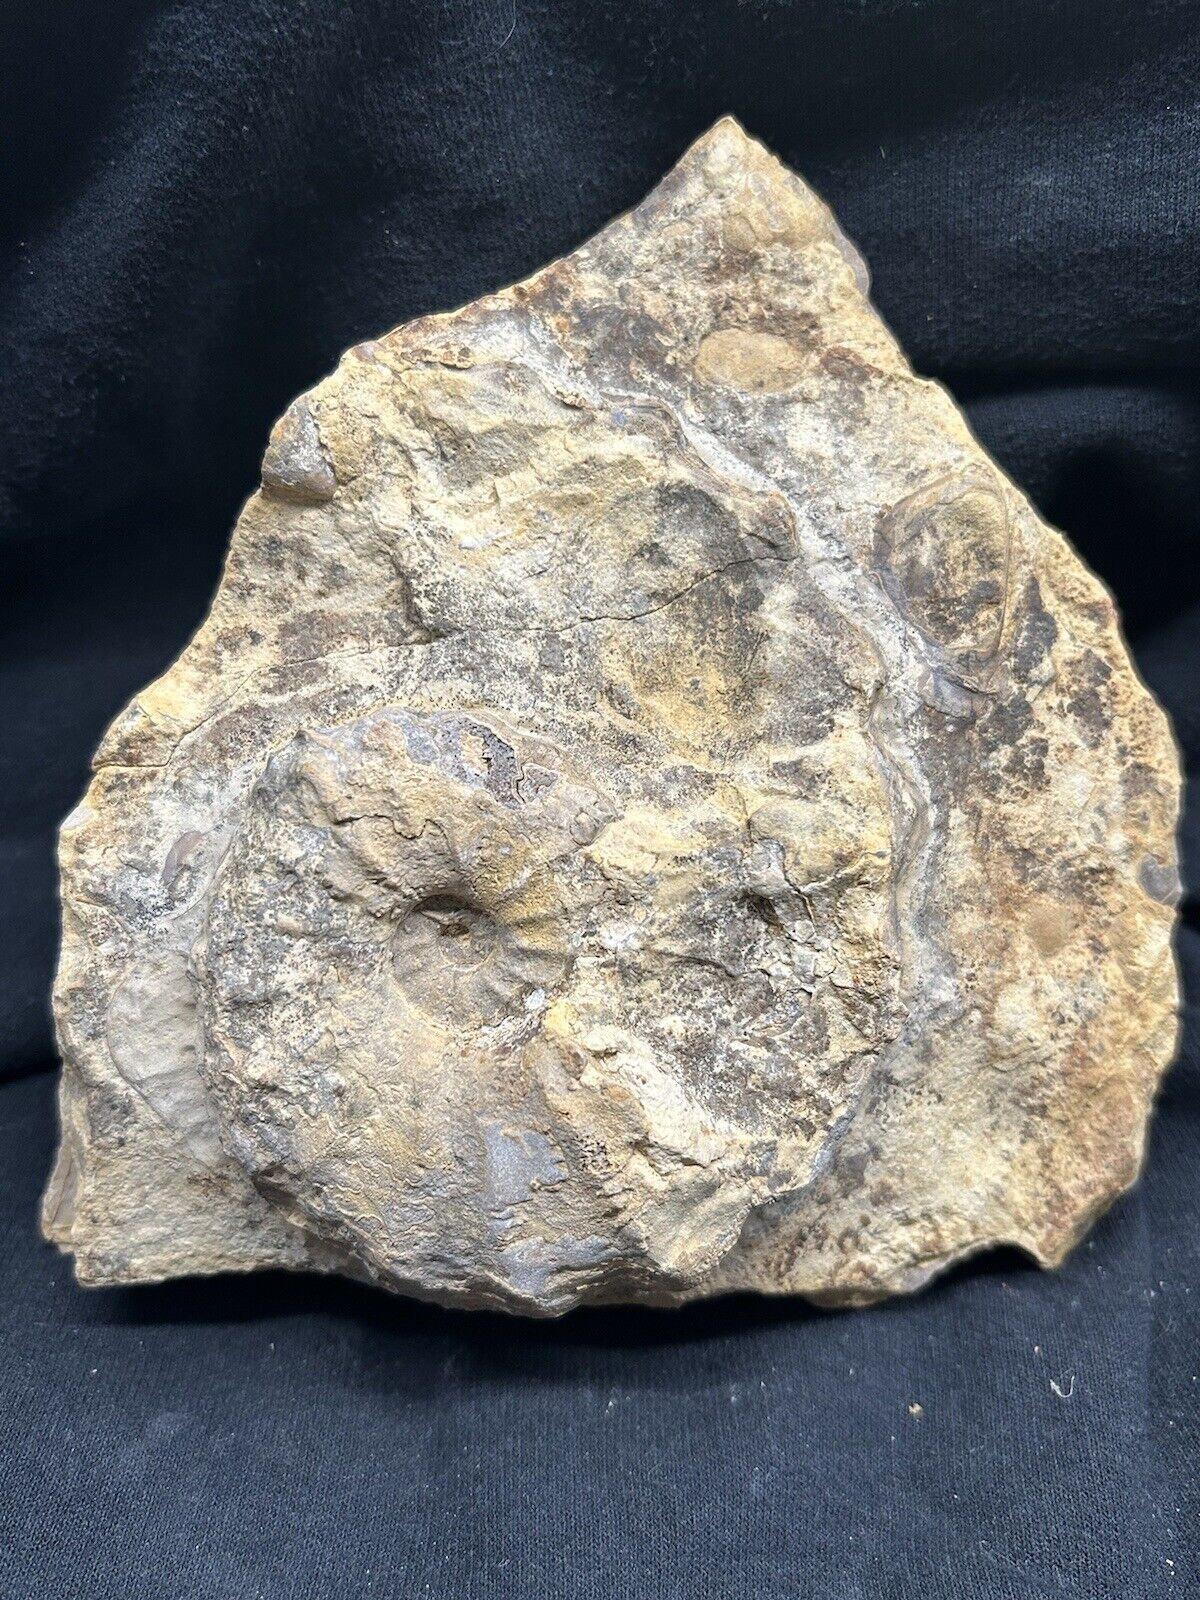 RARE Texas Fossil Conlinoceras (Calycoceras) Ammonite+Fish Vertebra On 7” Slab